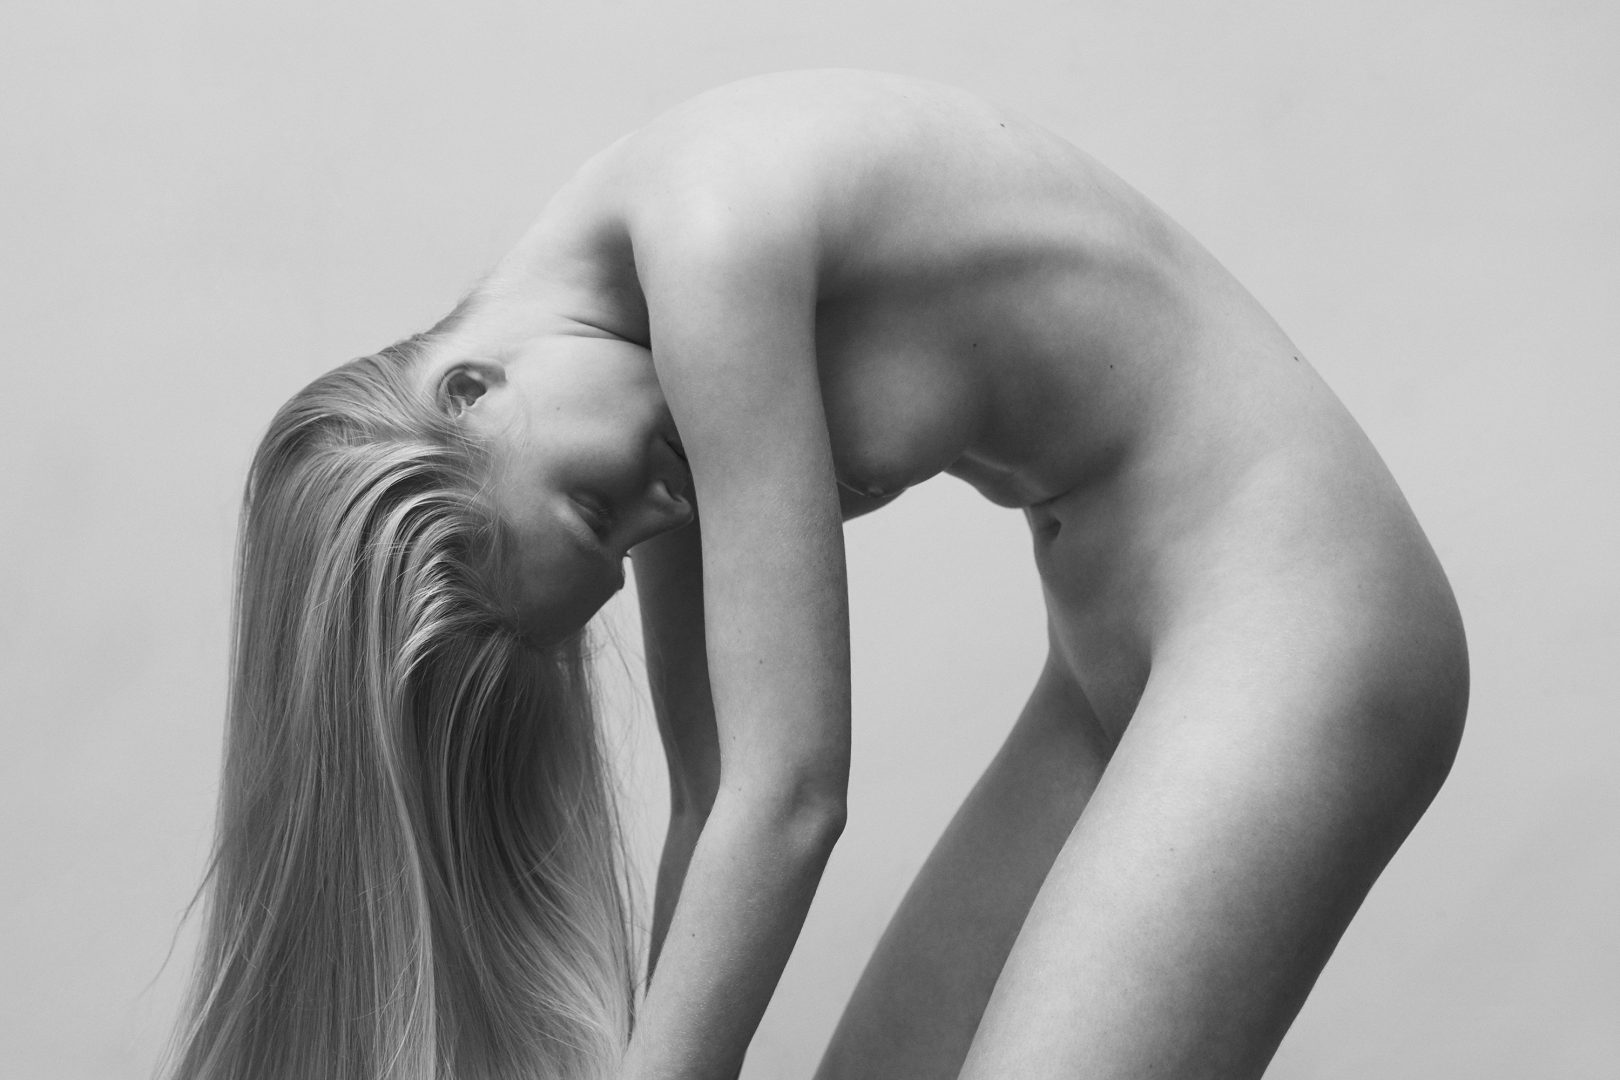 Naked girl bending forward by Stefan Rappo